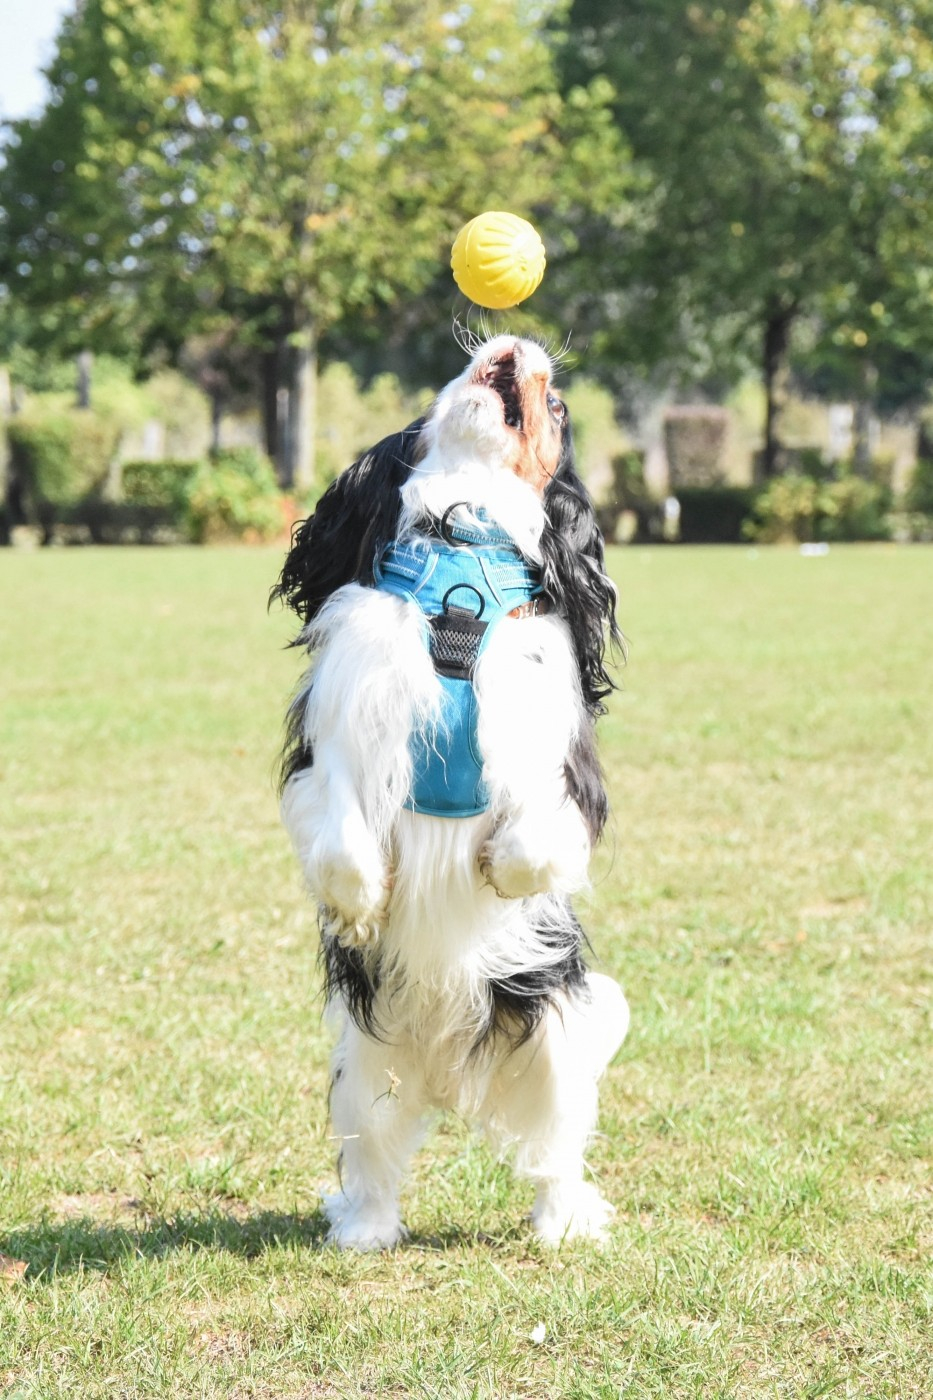 Brinquedo para cão Everlasting Fantastic DuraFoam Ball Starmark